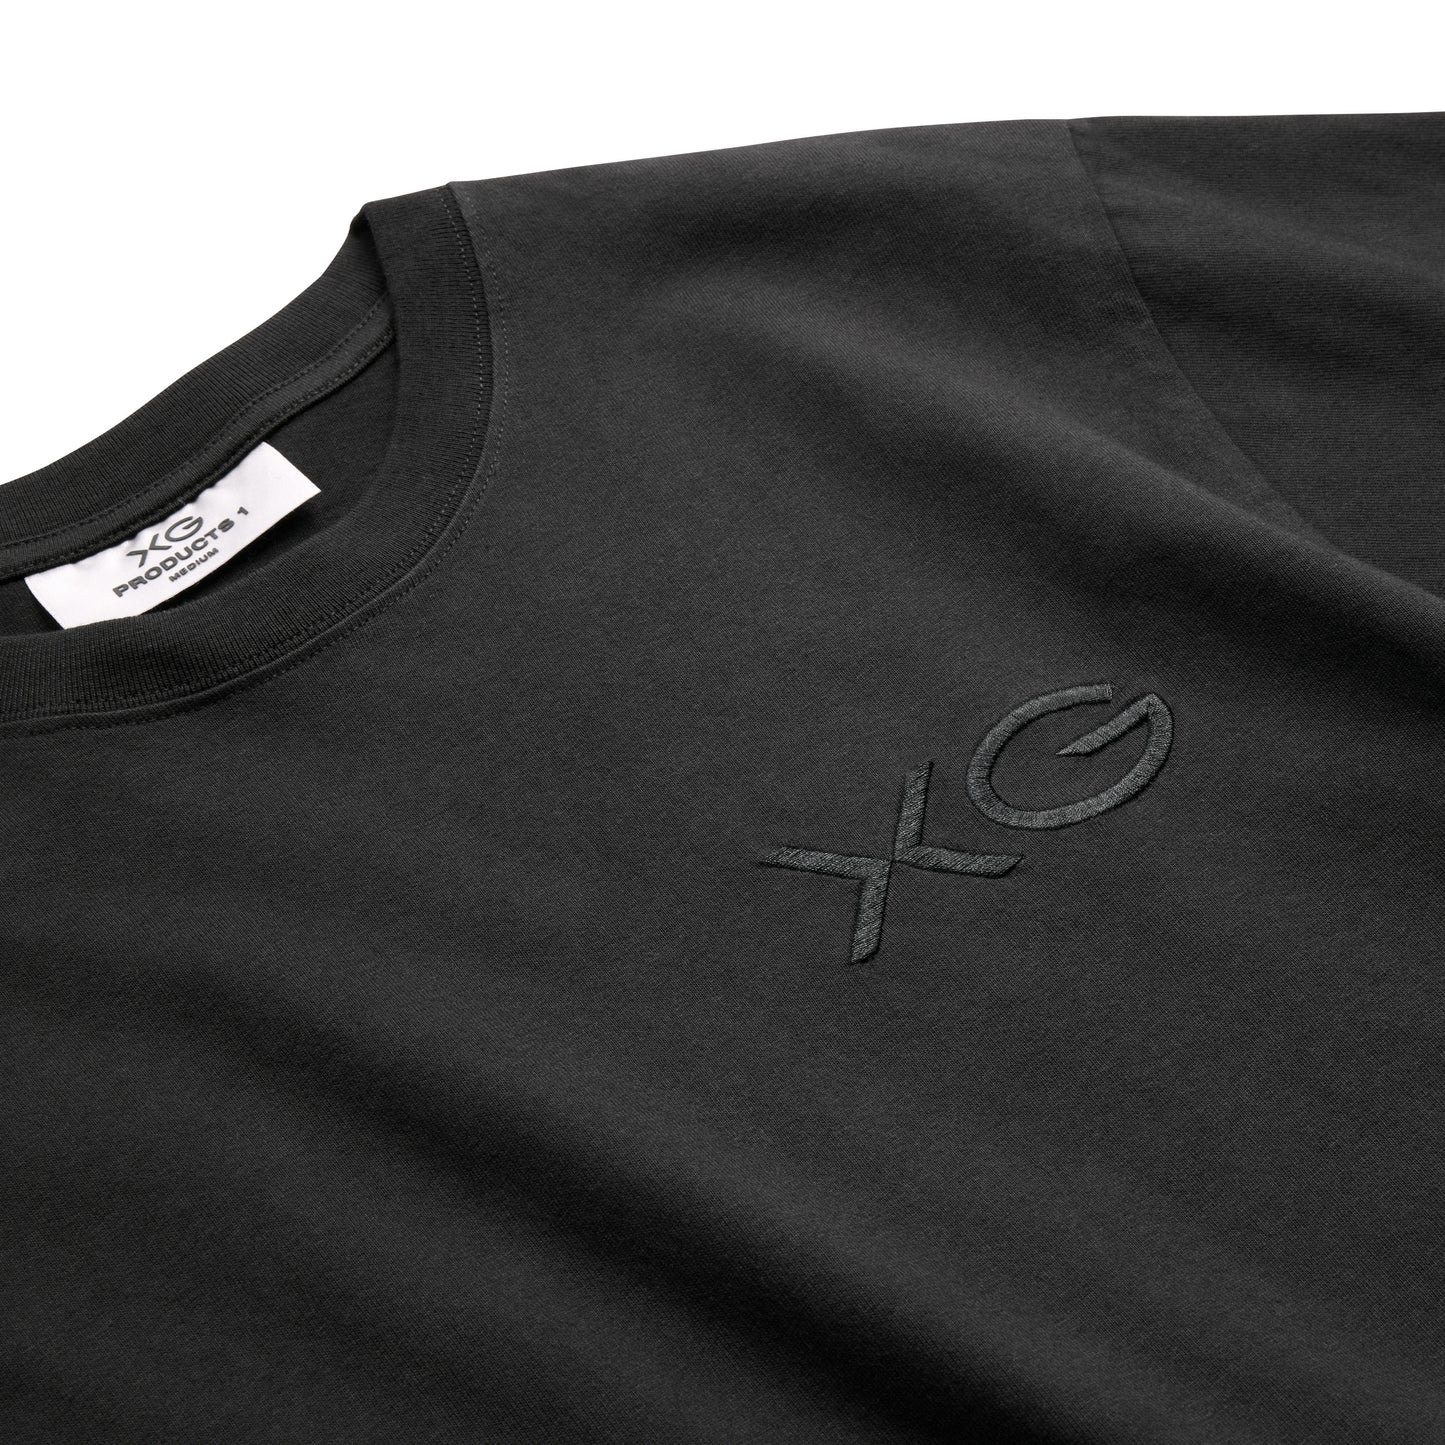 新品 未開封 XG Tシャツ XLサイズ 公式グッズ